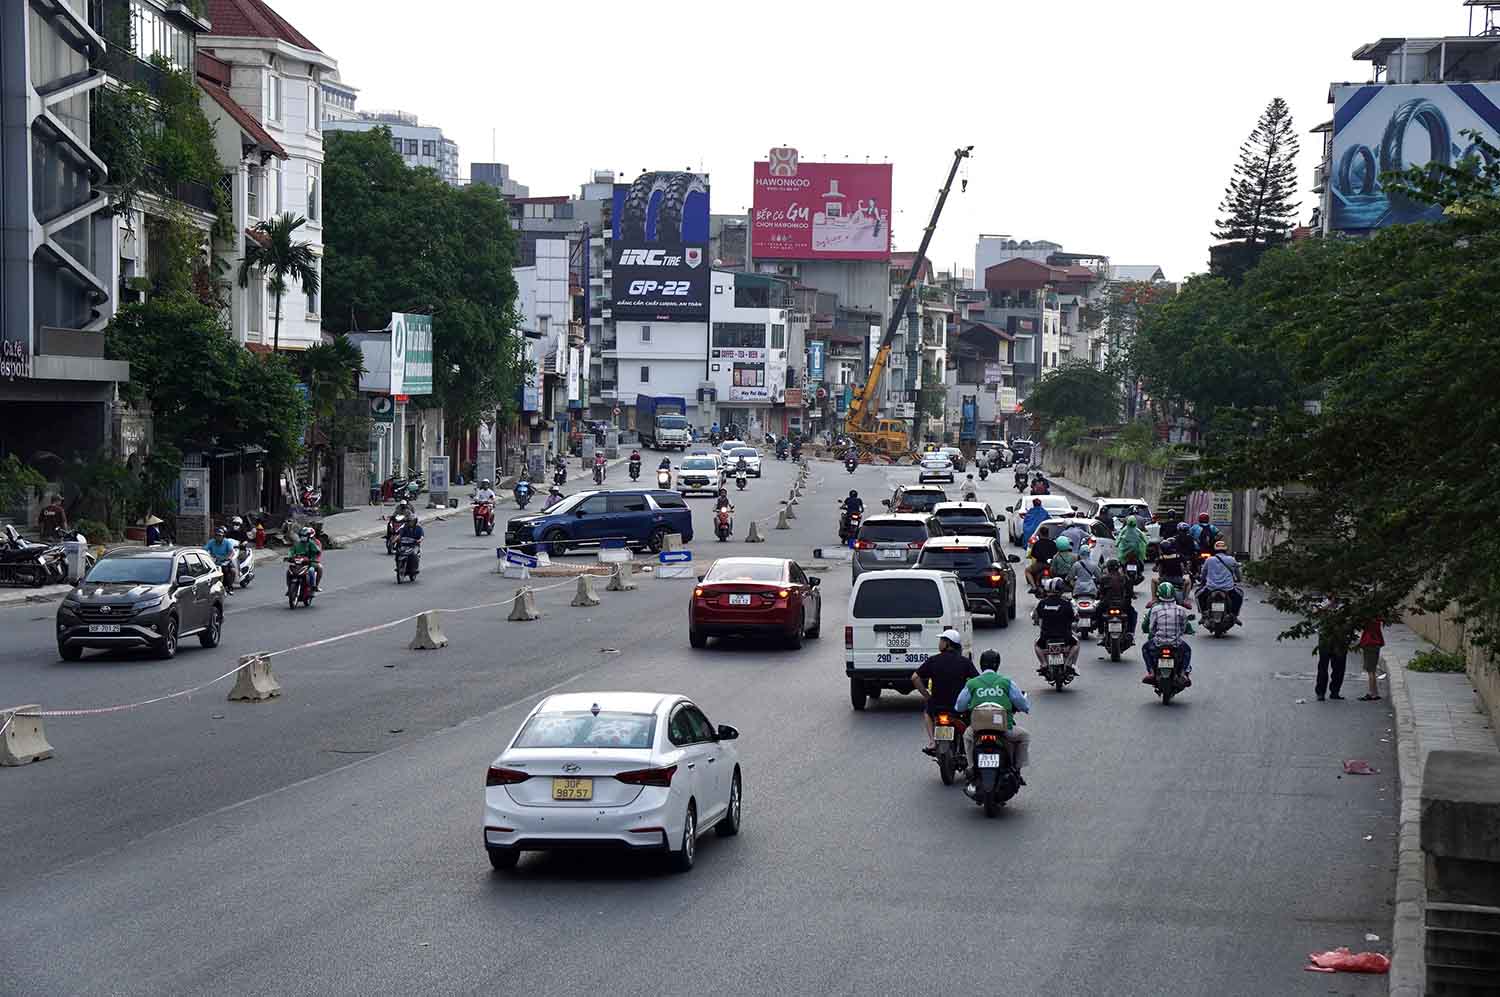 Dự án mở rộng đường Âu Cơ - Nghi Tàm (Hà Nội) vừa thông xe một phần, dài 260m, đoạn từ nút giao Xuân Diệu đến khách sạn Thắng Lợi (đường Yên Phụ), để phục vụ người dân đi lại.